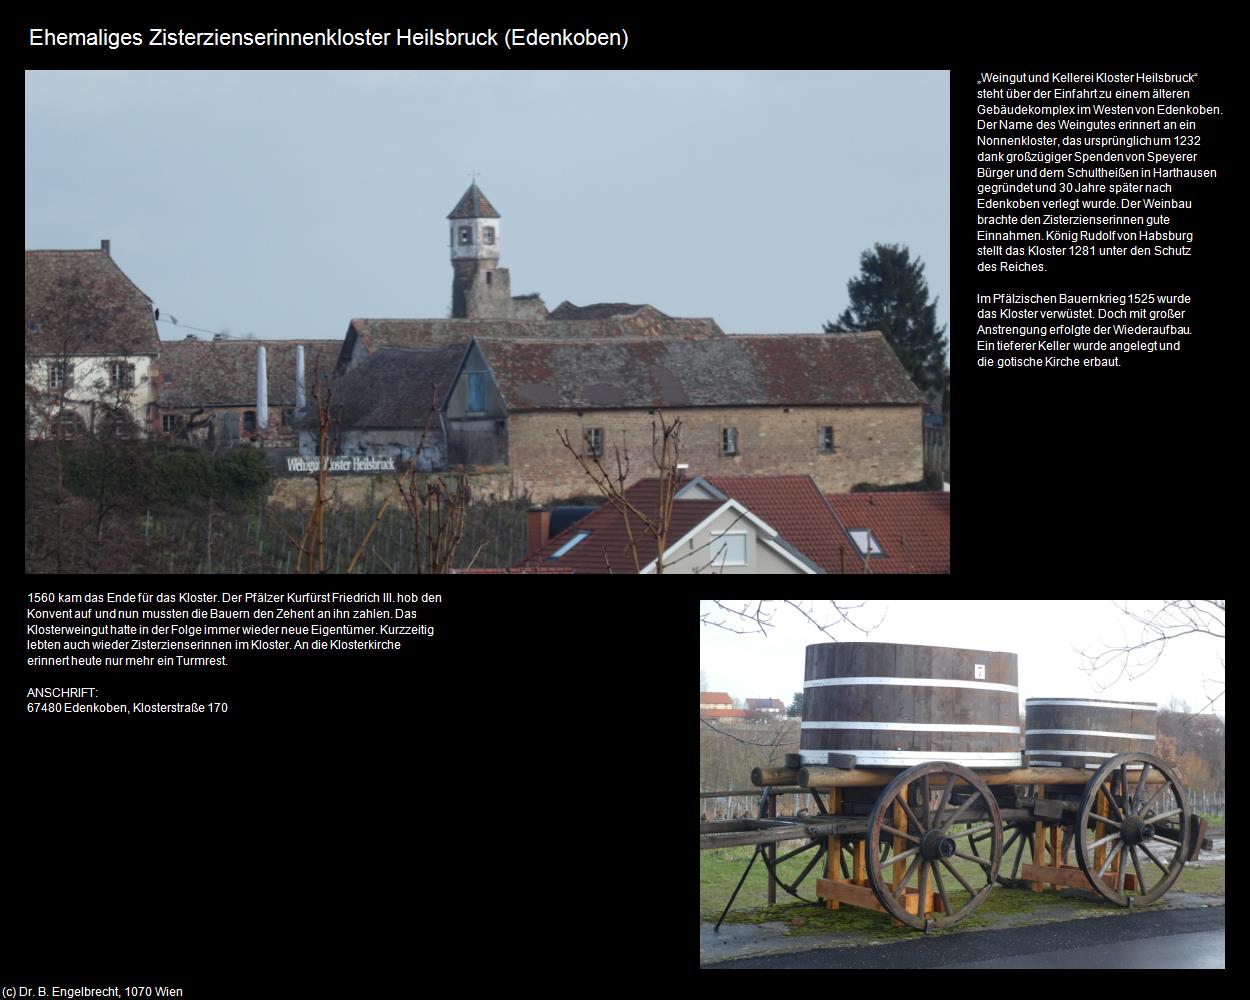 Ehem. Zisterzienserinnenkloster Heilsbruck (Edenkoben (DEU-RP)) in RHEINLAND-PFALZ und SAARLAND